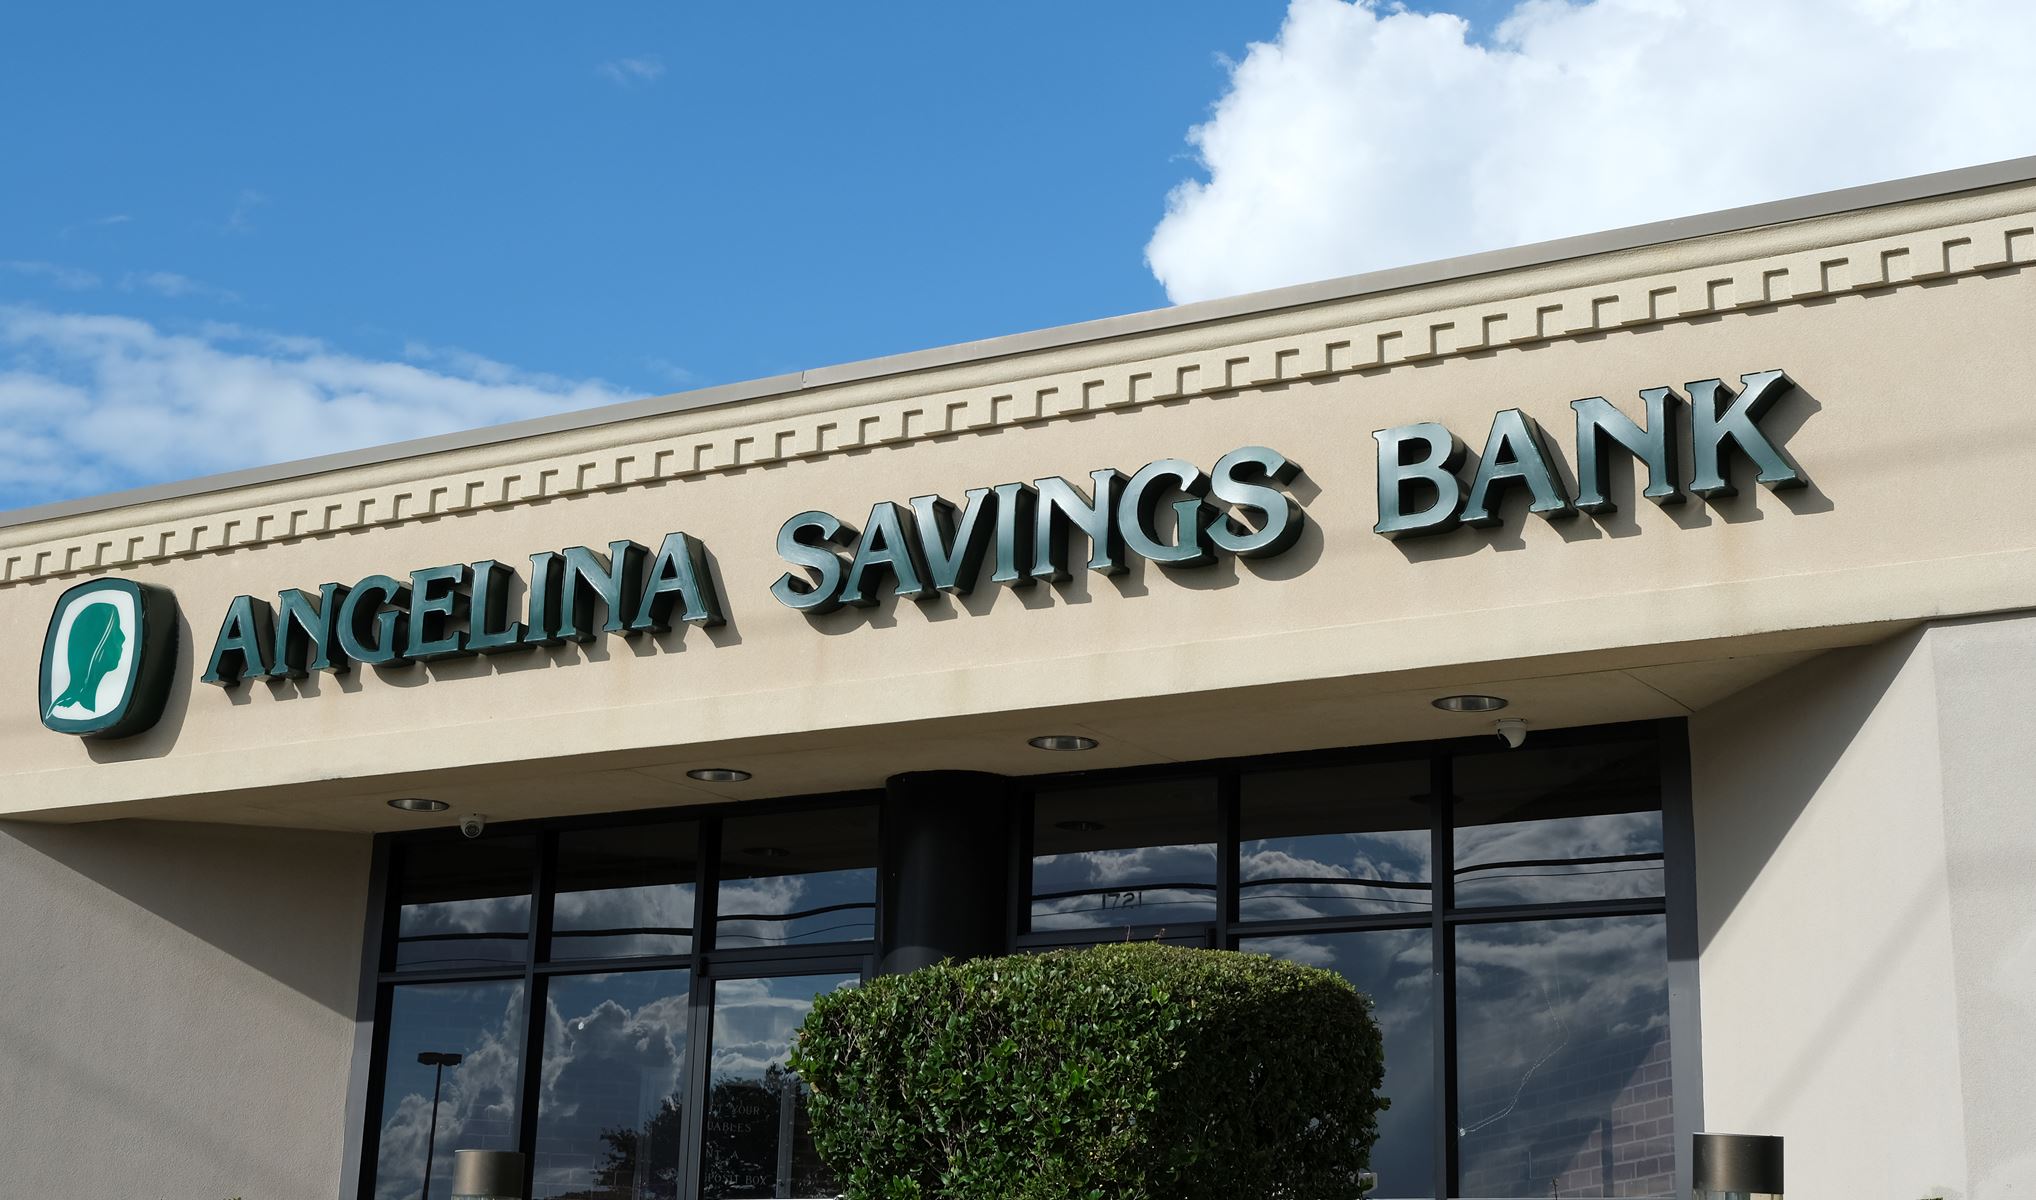 Angelina Savings Bank Sign